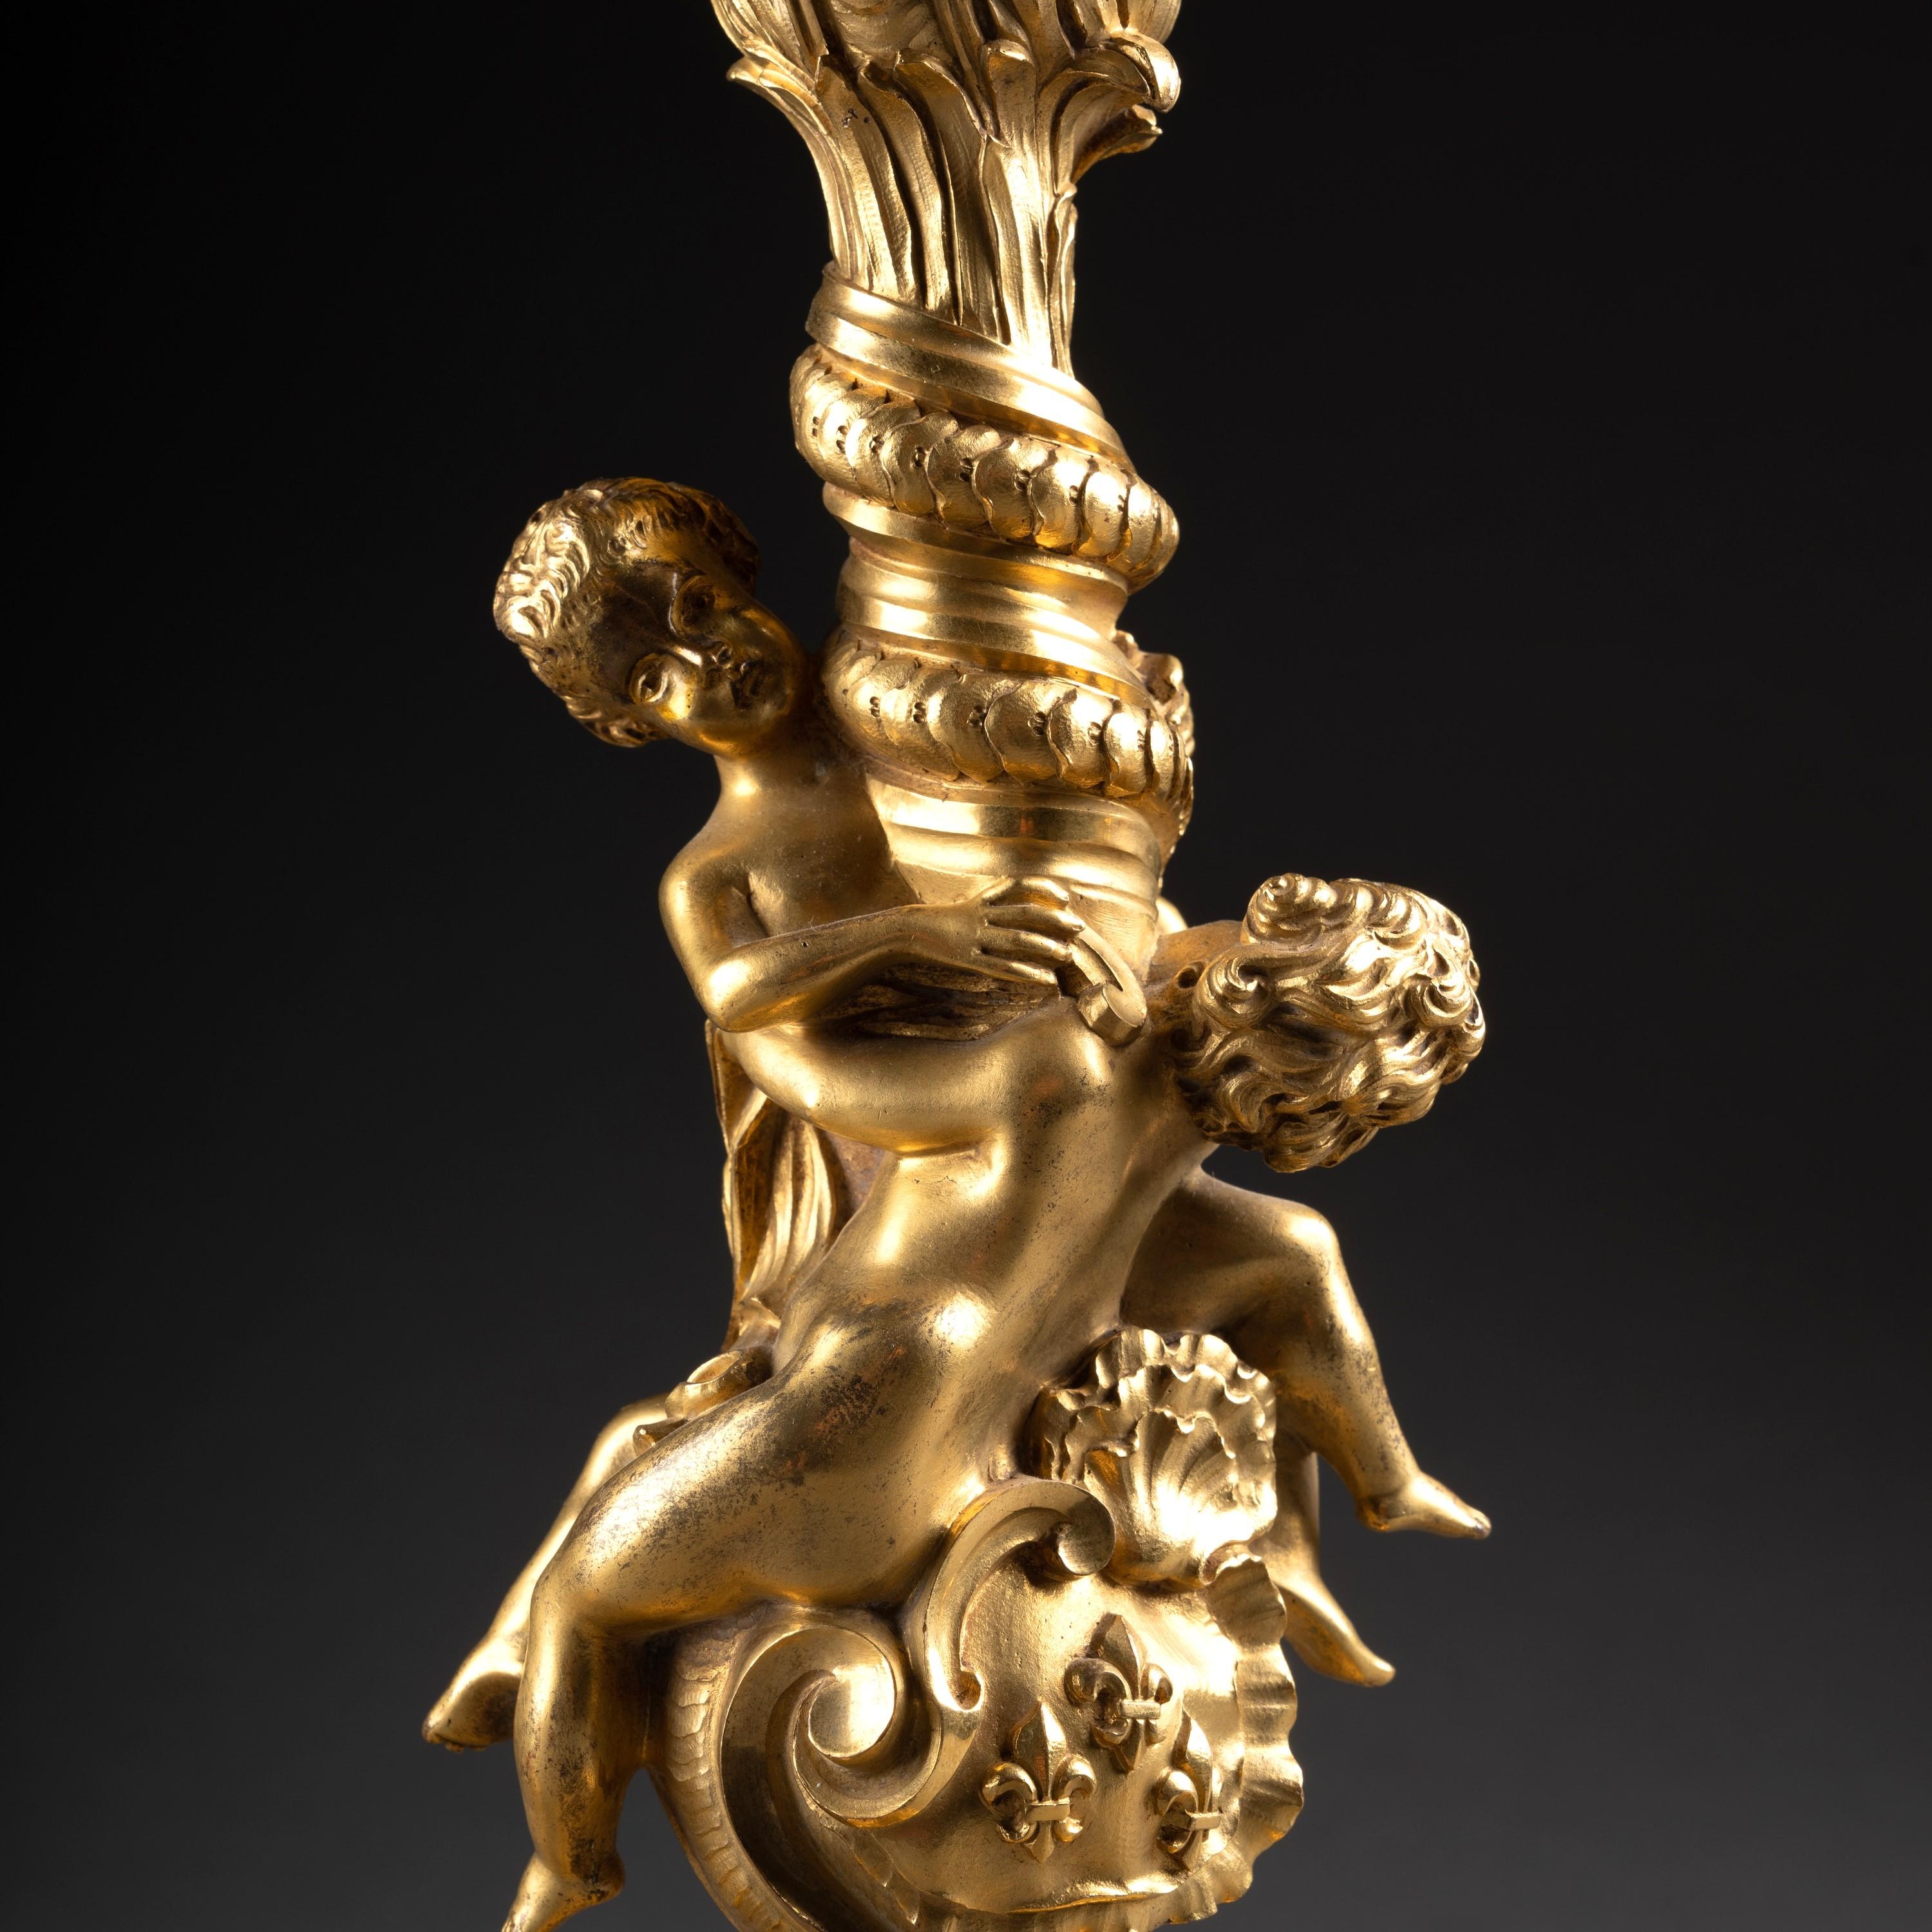 Ein fein ziseliertes Paar französischer figuraler Kerzenleuchter aus vergoldeter Bronze im Stil von Juste-Aurèle Meissonier, dem berühmten französischen Designer des 18. Jahrhunderts.
Höhe 12,40 Zoll

Die Kerzenhalter haben einen reich ziselierten